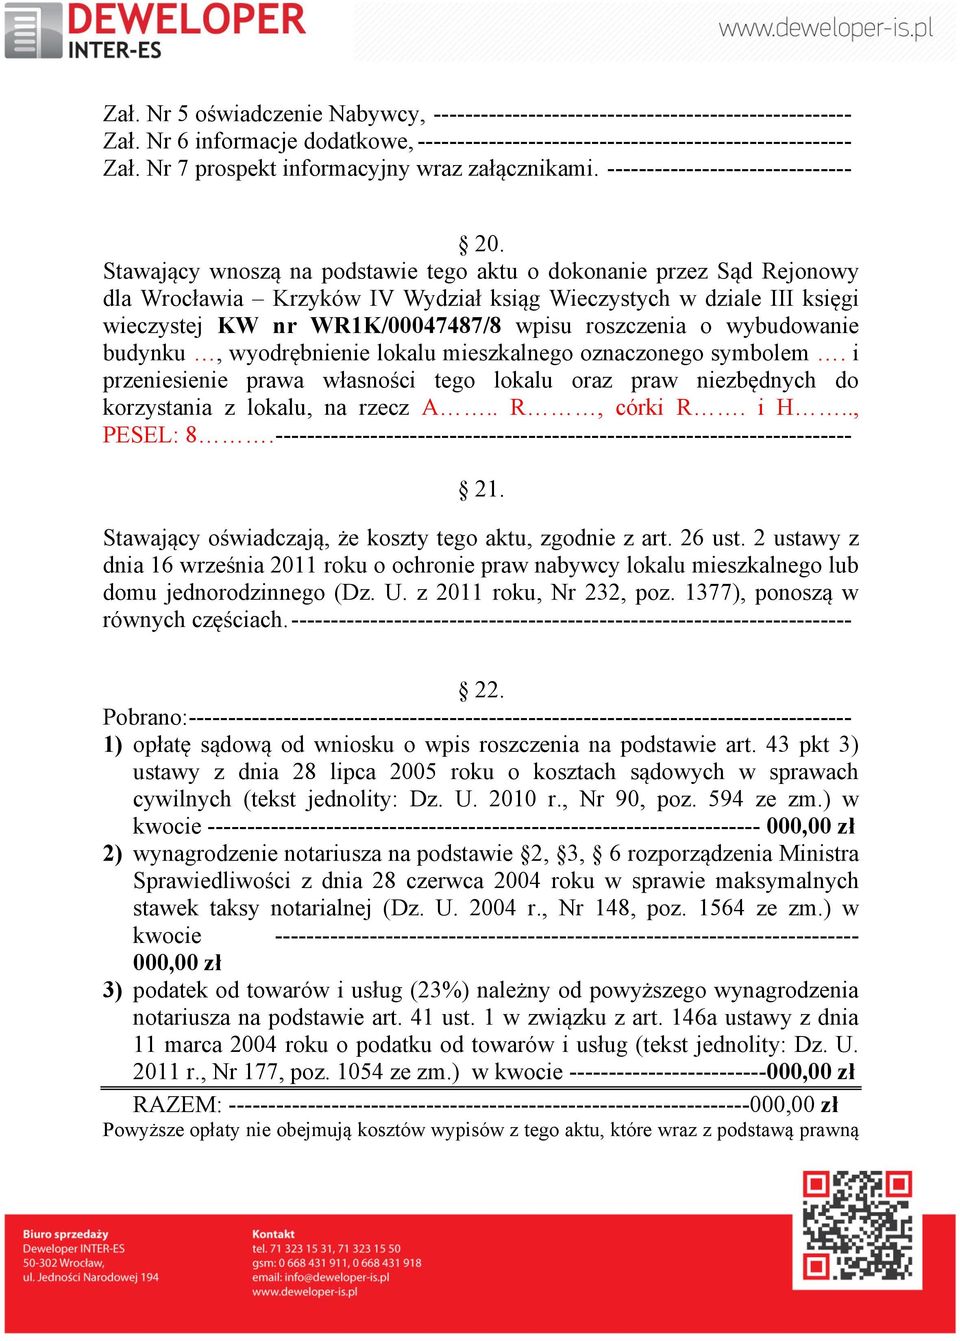 Stawający wnoszą na podstawie tego aktu o dokonanie przez Sąd Rejonowy dla Wrocławia Krzyków IV Wydział ksiąg Wieczystych w dziale III księgi wieczystej KW nr WR1K/00047487/8 wpisu roszczenia o